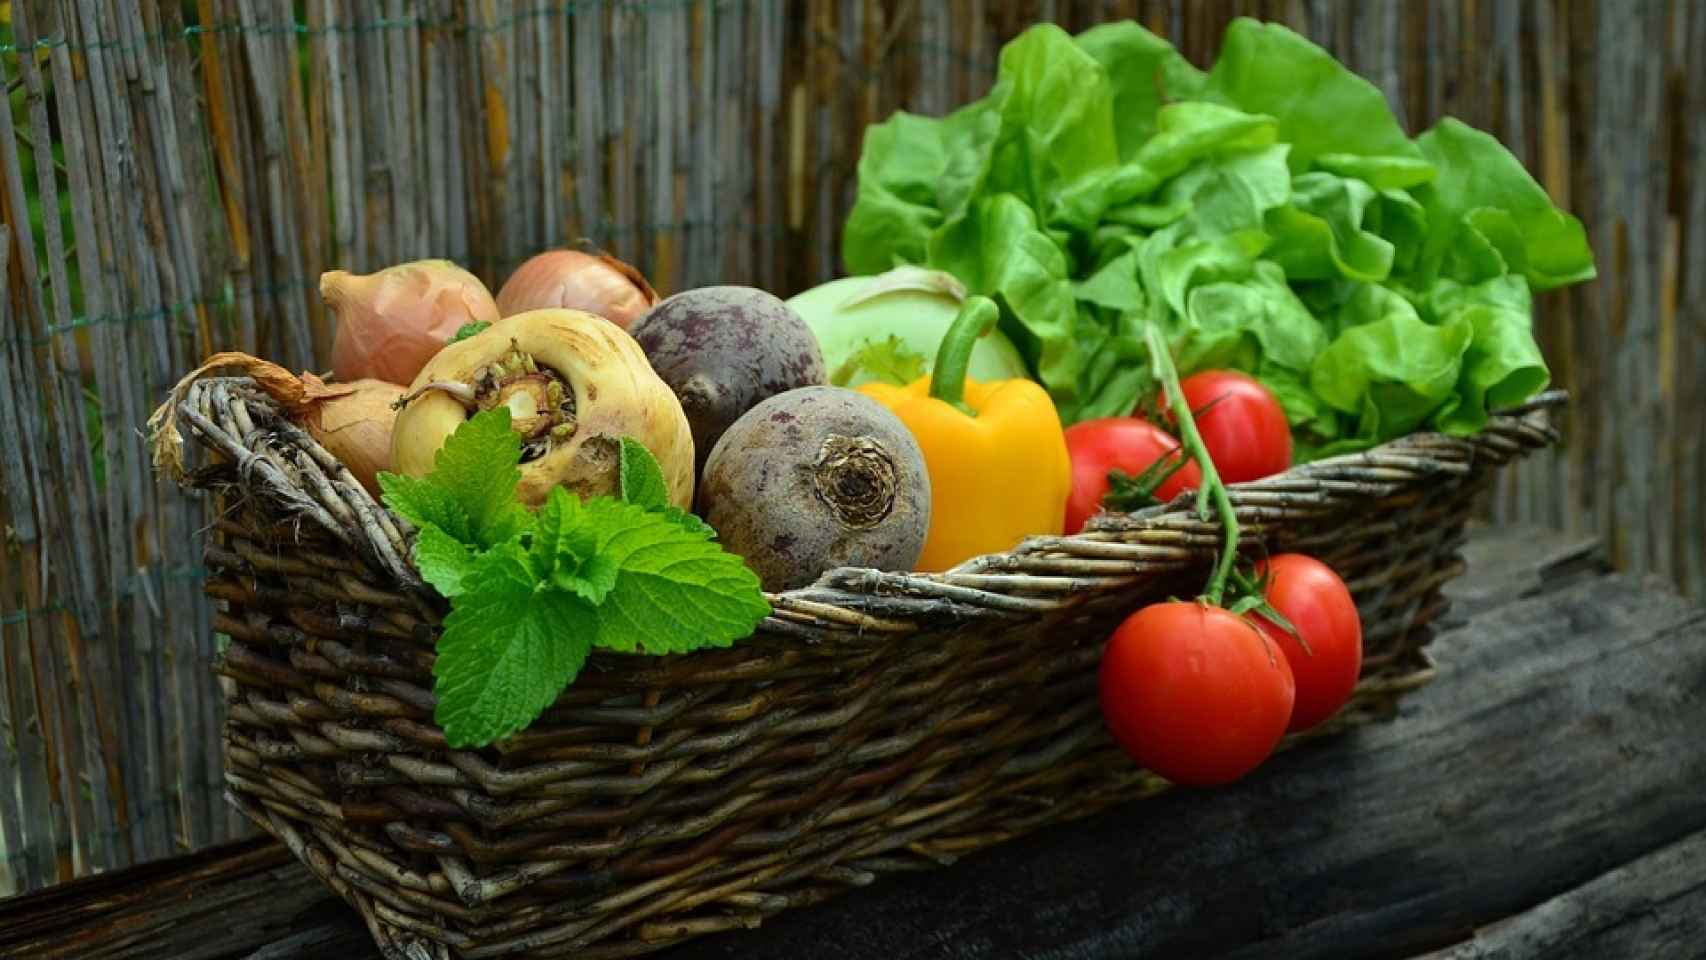 Los pesticidas mantienen sanas a las frutas y verduras, pero también pueden influir negativamente en nuestra salud.